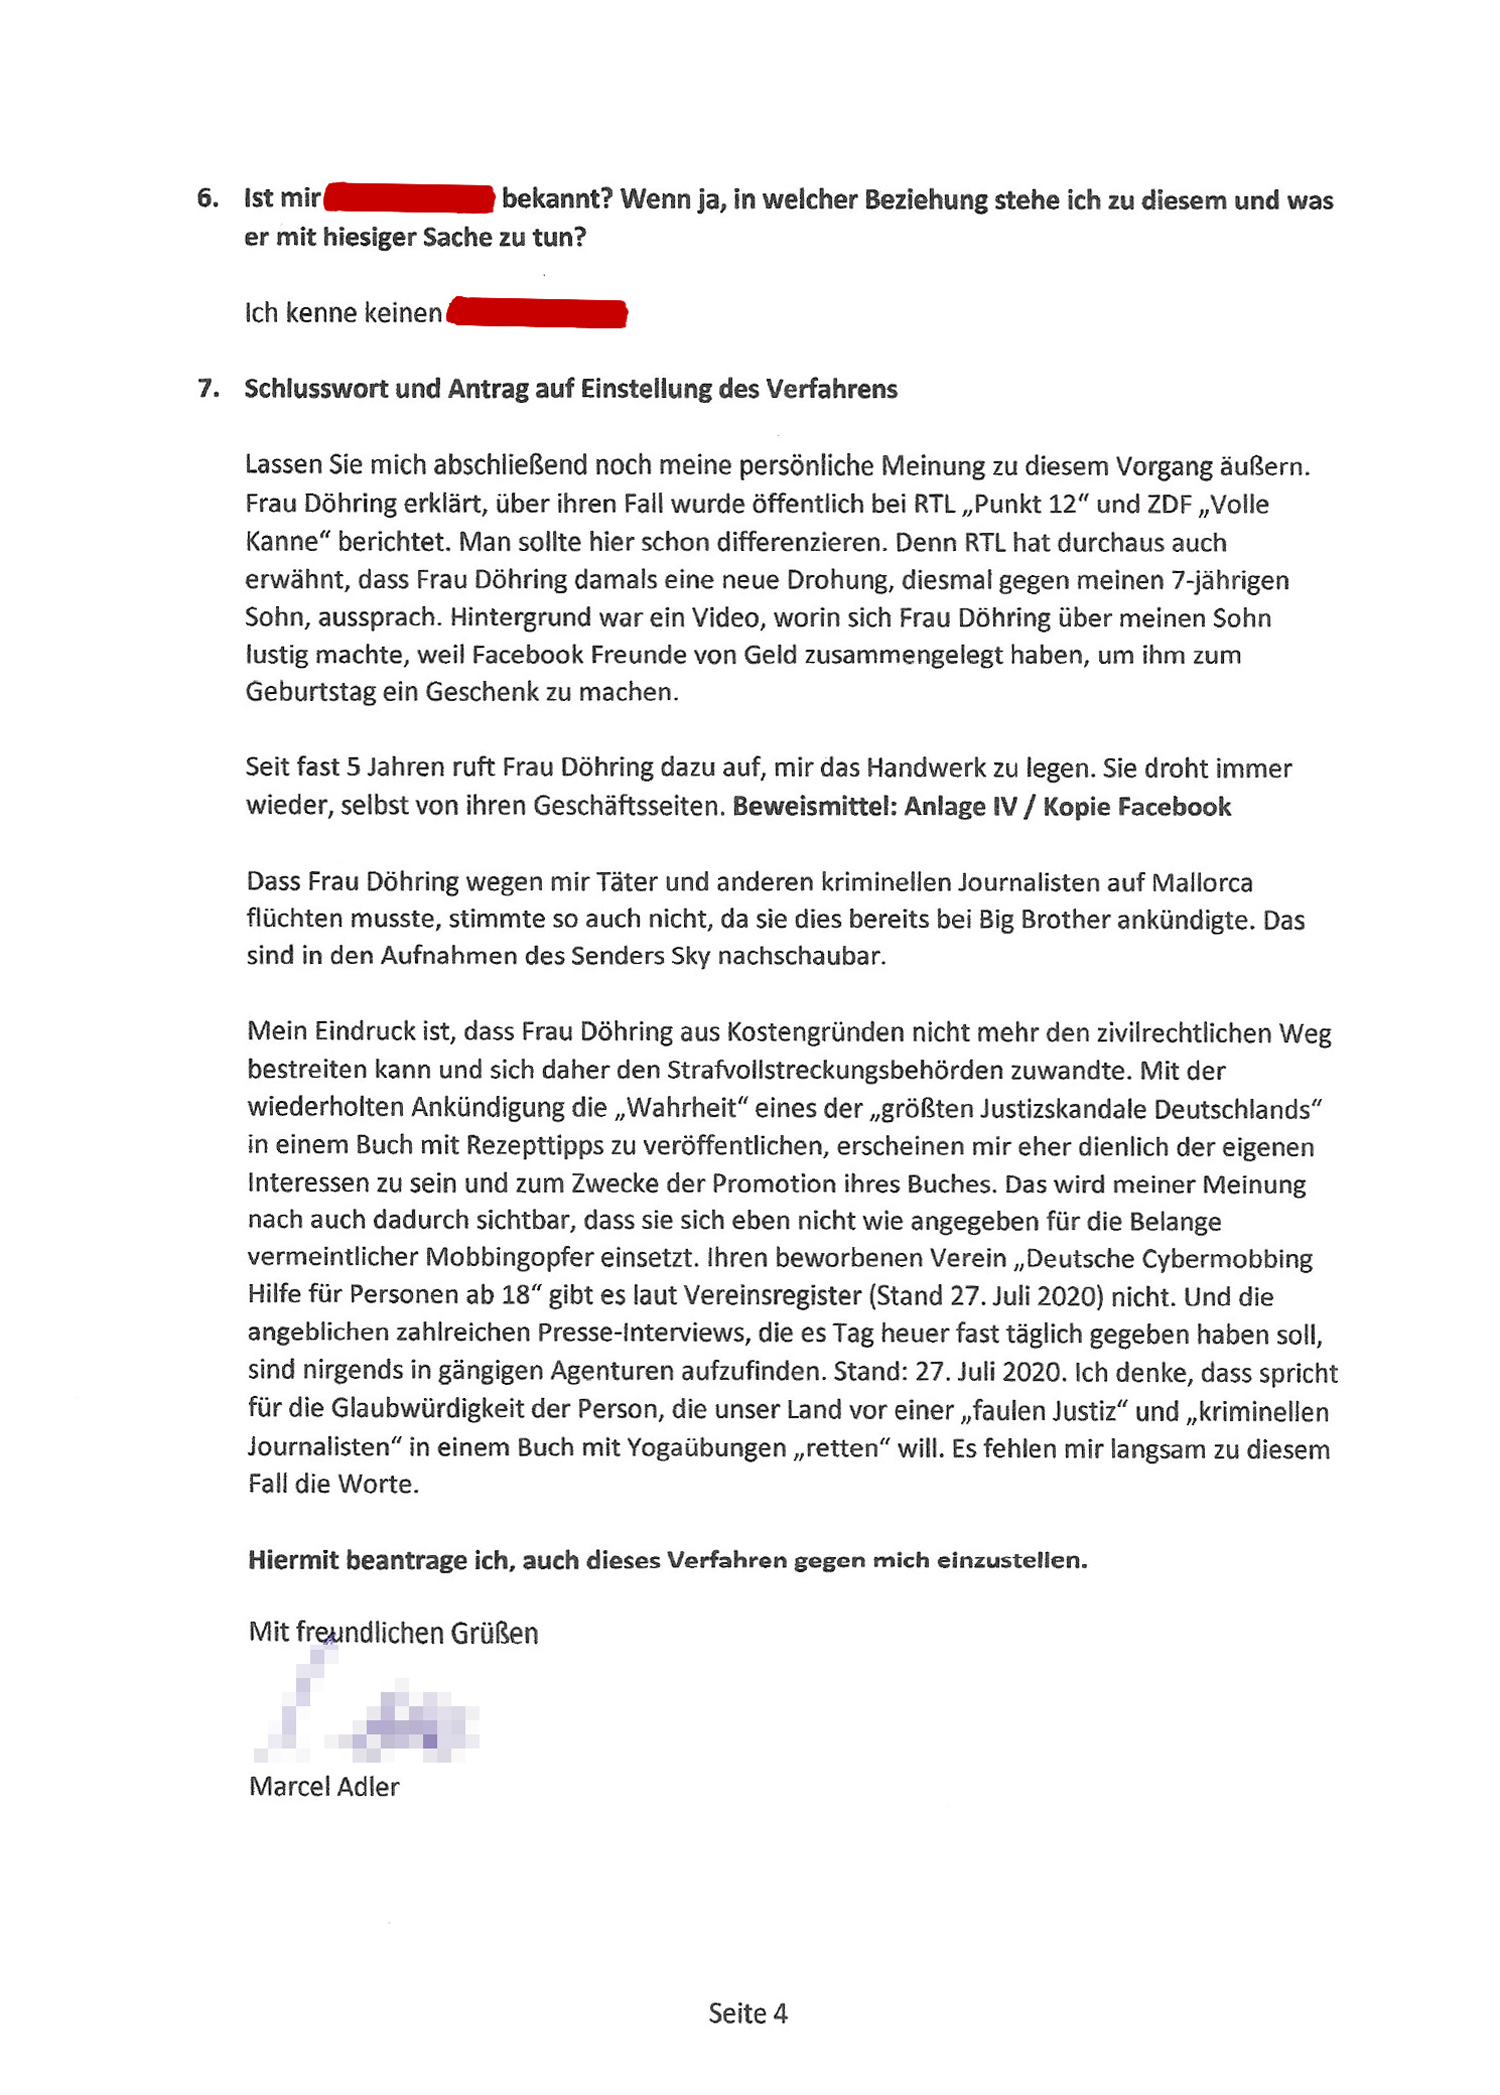 Freispruch für Marcel Adler - neue Ermittlungen gegen Bianca Döhring - Polizei Justiz Cybermobbing Strafanzeige